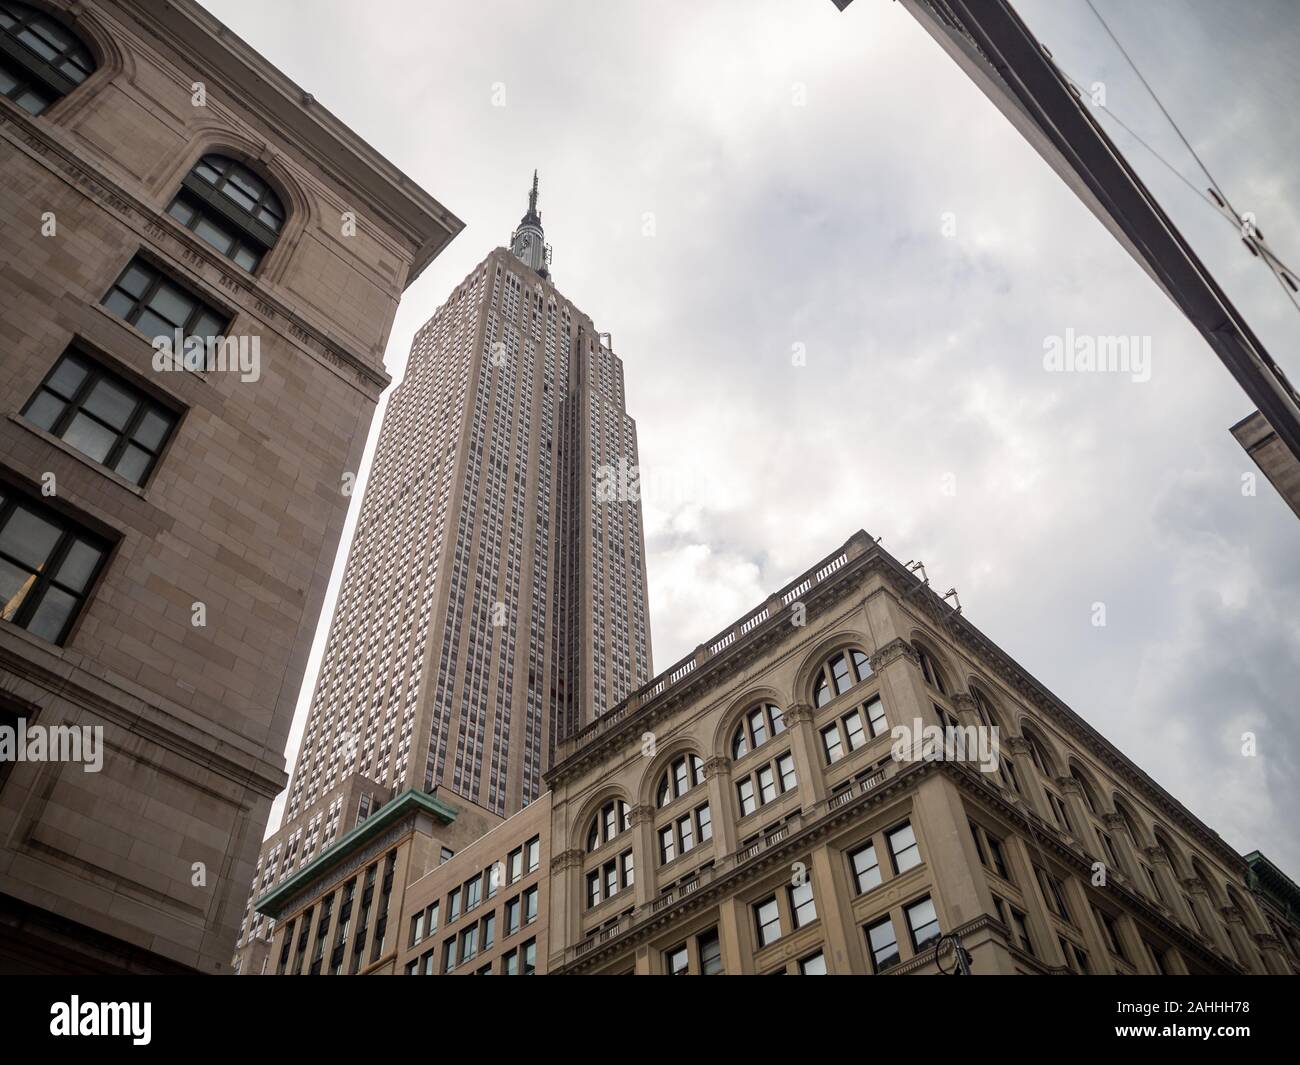 La città di New York, Stati Uniti d'America : [ Empire State Building, vista dalla strada ] Foto Stock